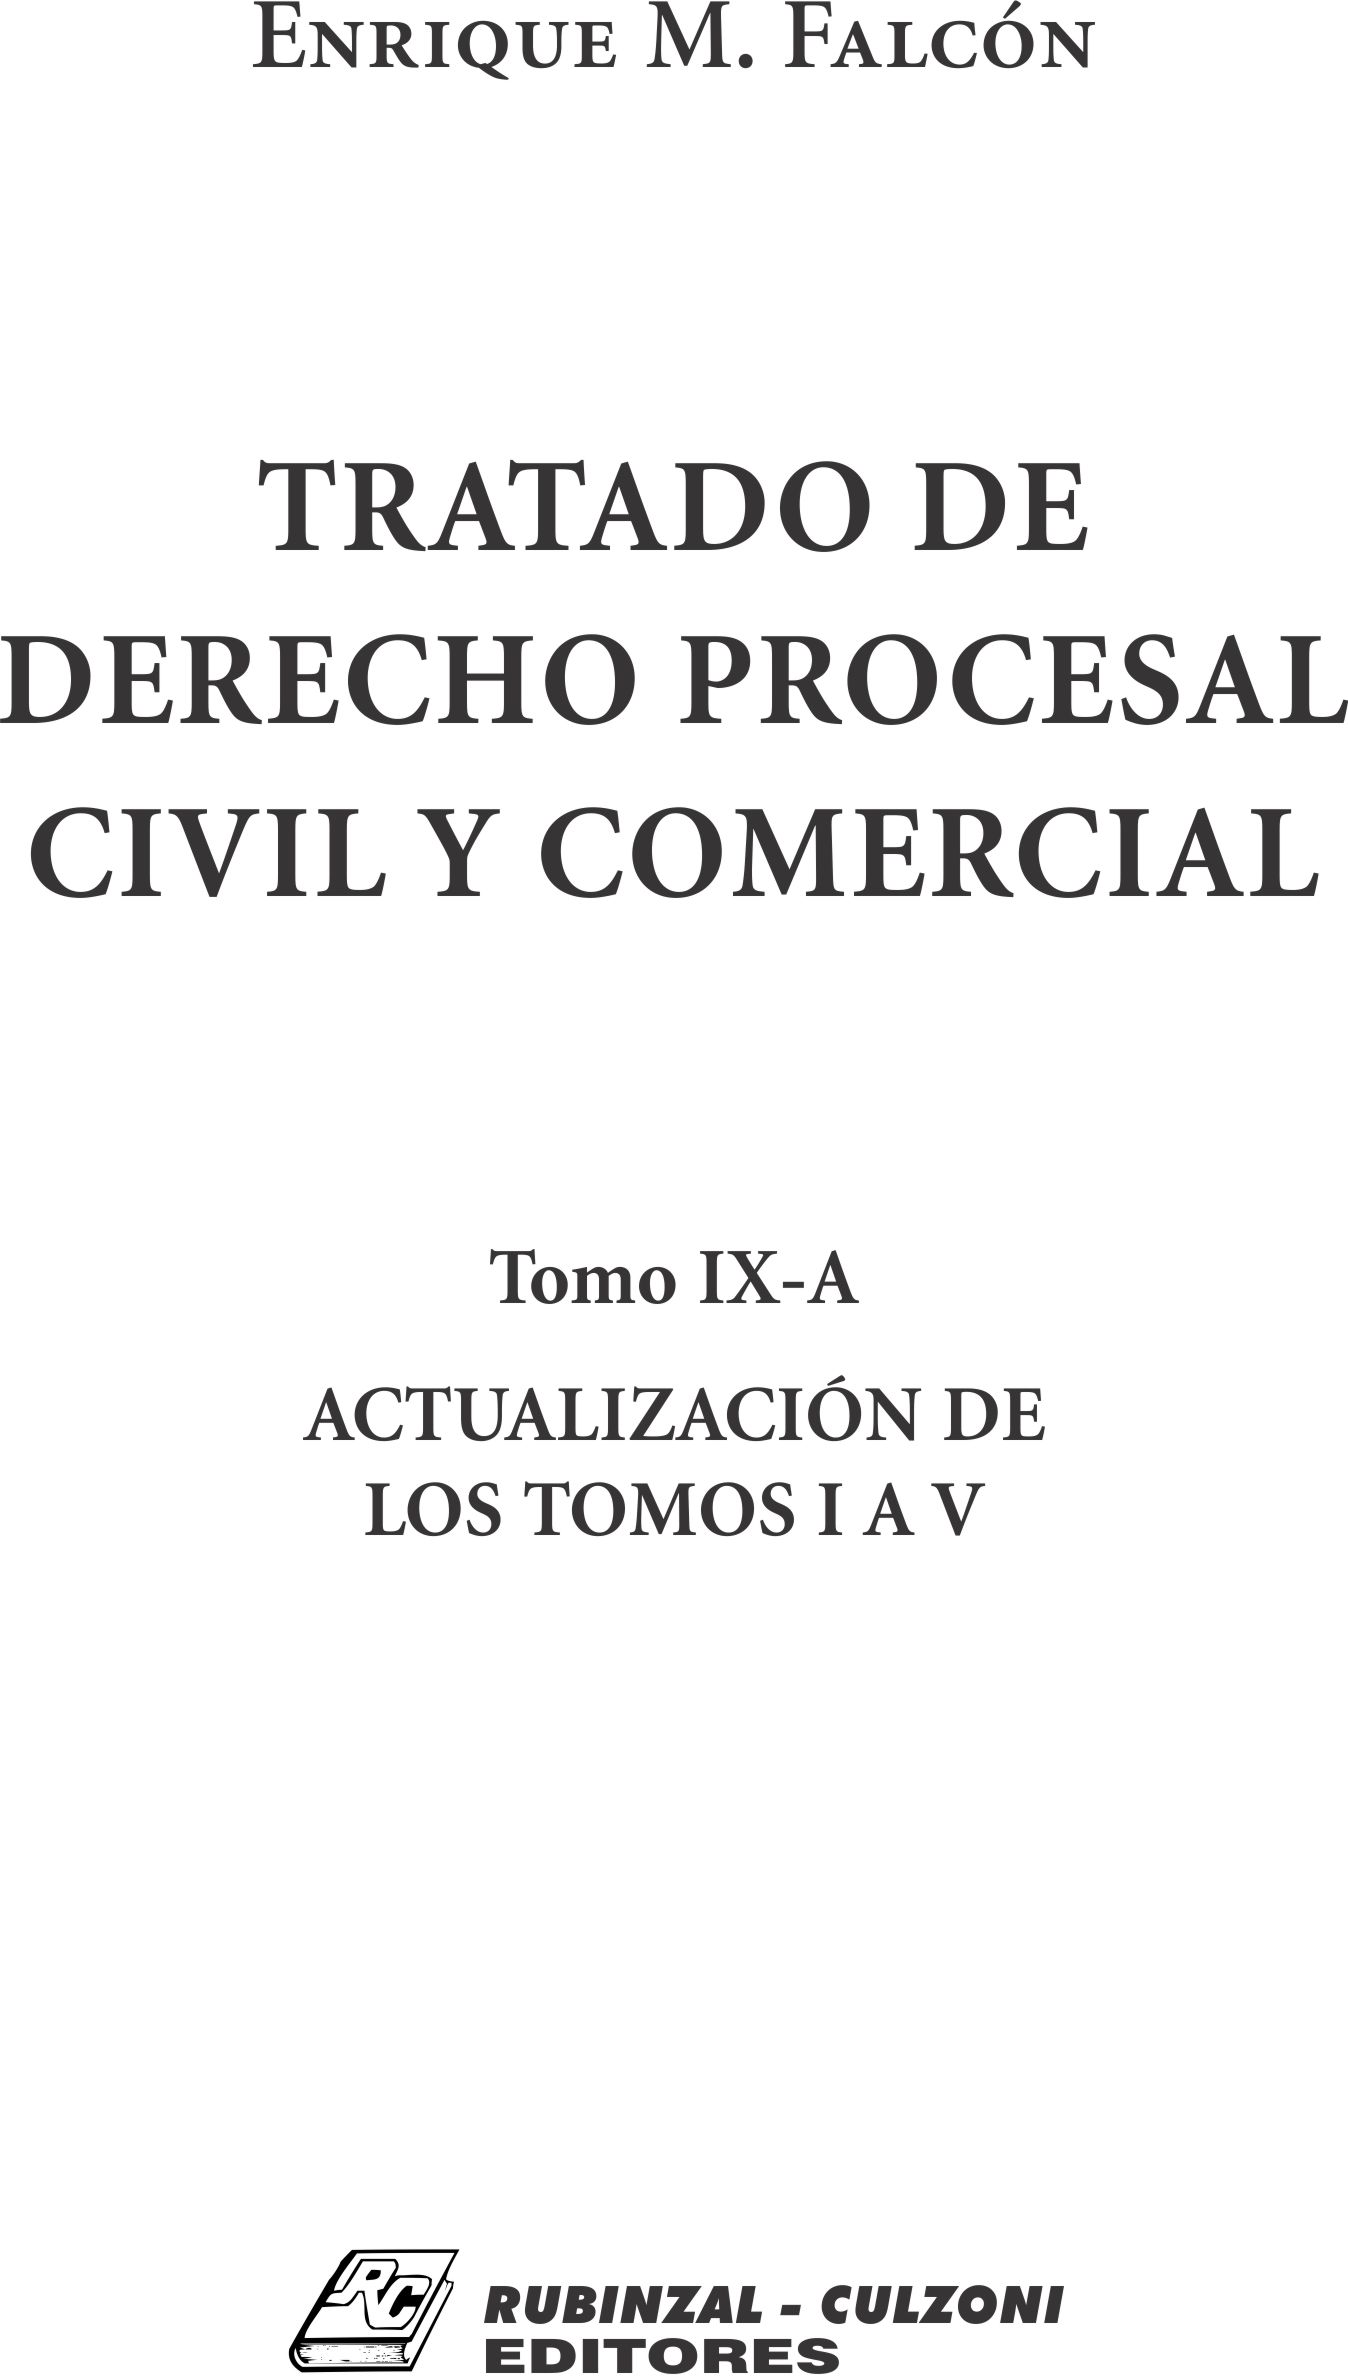 Tratado de Derecho Procesal Civil y Comercial. - Tomo IX-A. Actualización de los tomos I a V.